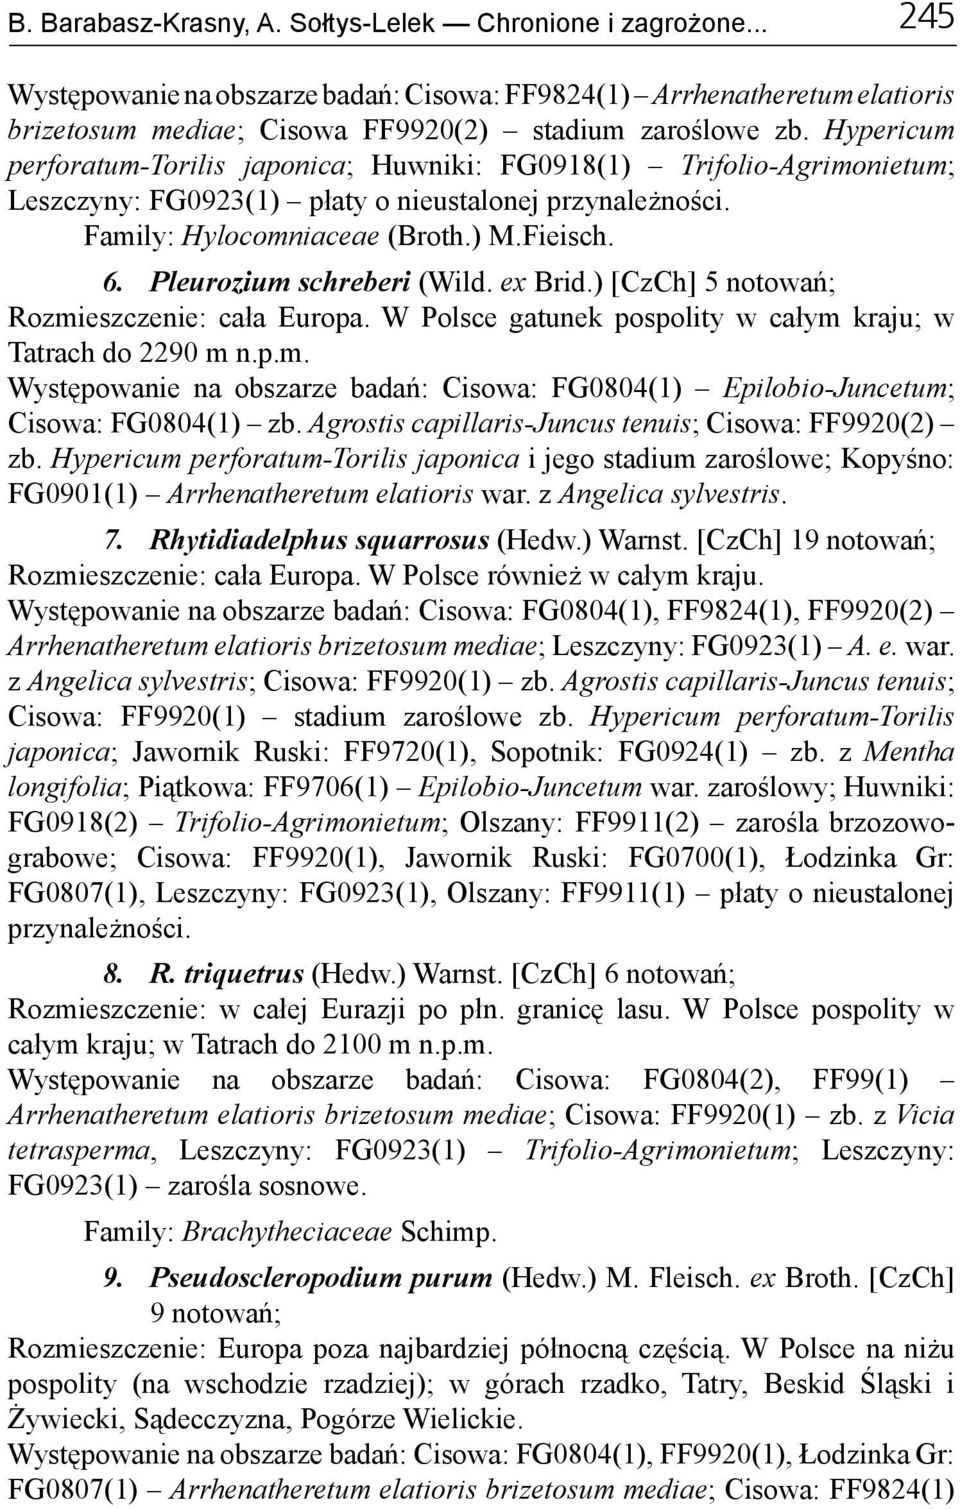 Pleurozium schreberi (Wild. ex Brid.) [CzCh] 5 notowań; Rozmieszczenie: cała Europa. W Polsce gatunek pospolity w całym kraju; w Tatrach do 2290 m n.p.m. Występowanie na obszarze badań: Cisowa: FG0804(1) Epilobio-Juncetum; Cisowa: FG0804(1) zb.